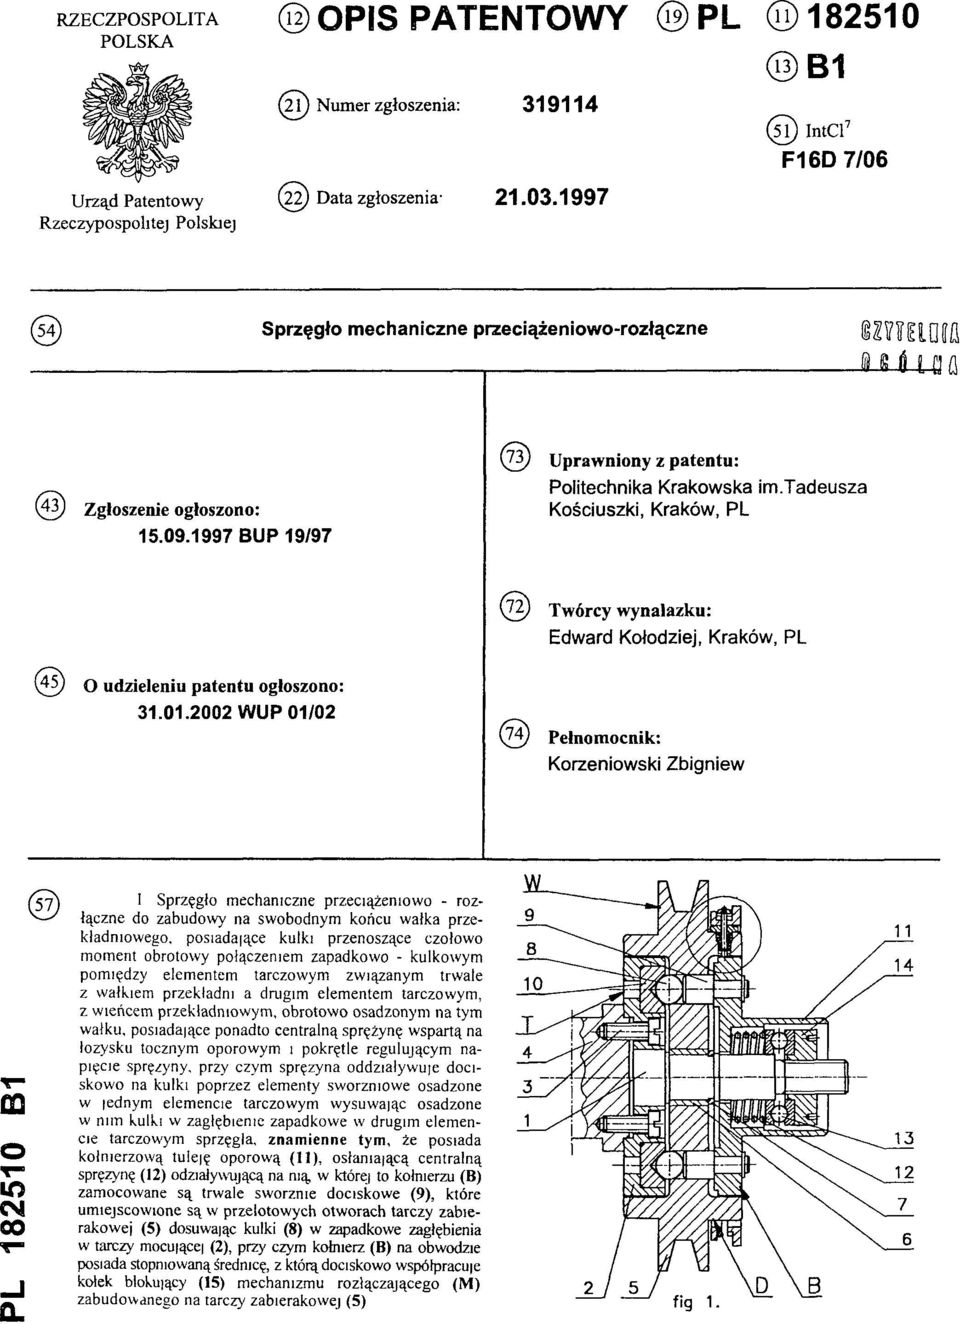 tadeusza (43) Zgłoszenie ogłoszono: Kościuszki, Kraków, PL 15.09.1997 BUP 19/97 (72) Twórcy wynalazku: Edward Kołodziej, Kraków, PL (45) O udzieleniu patentu ogłoszono: 31.01.